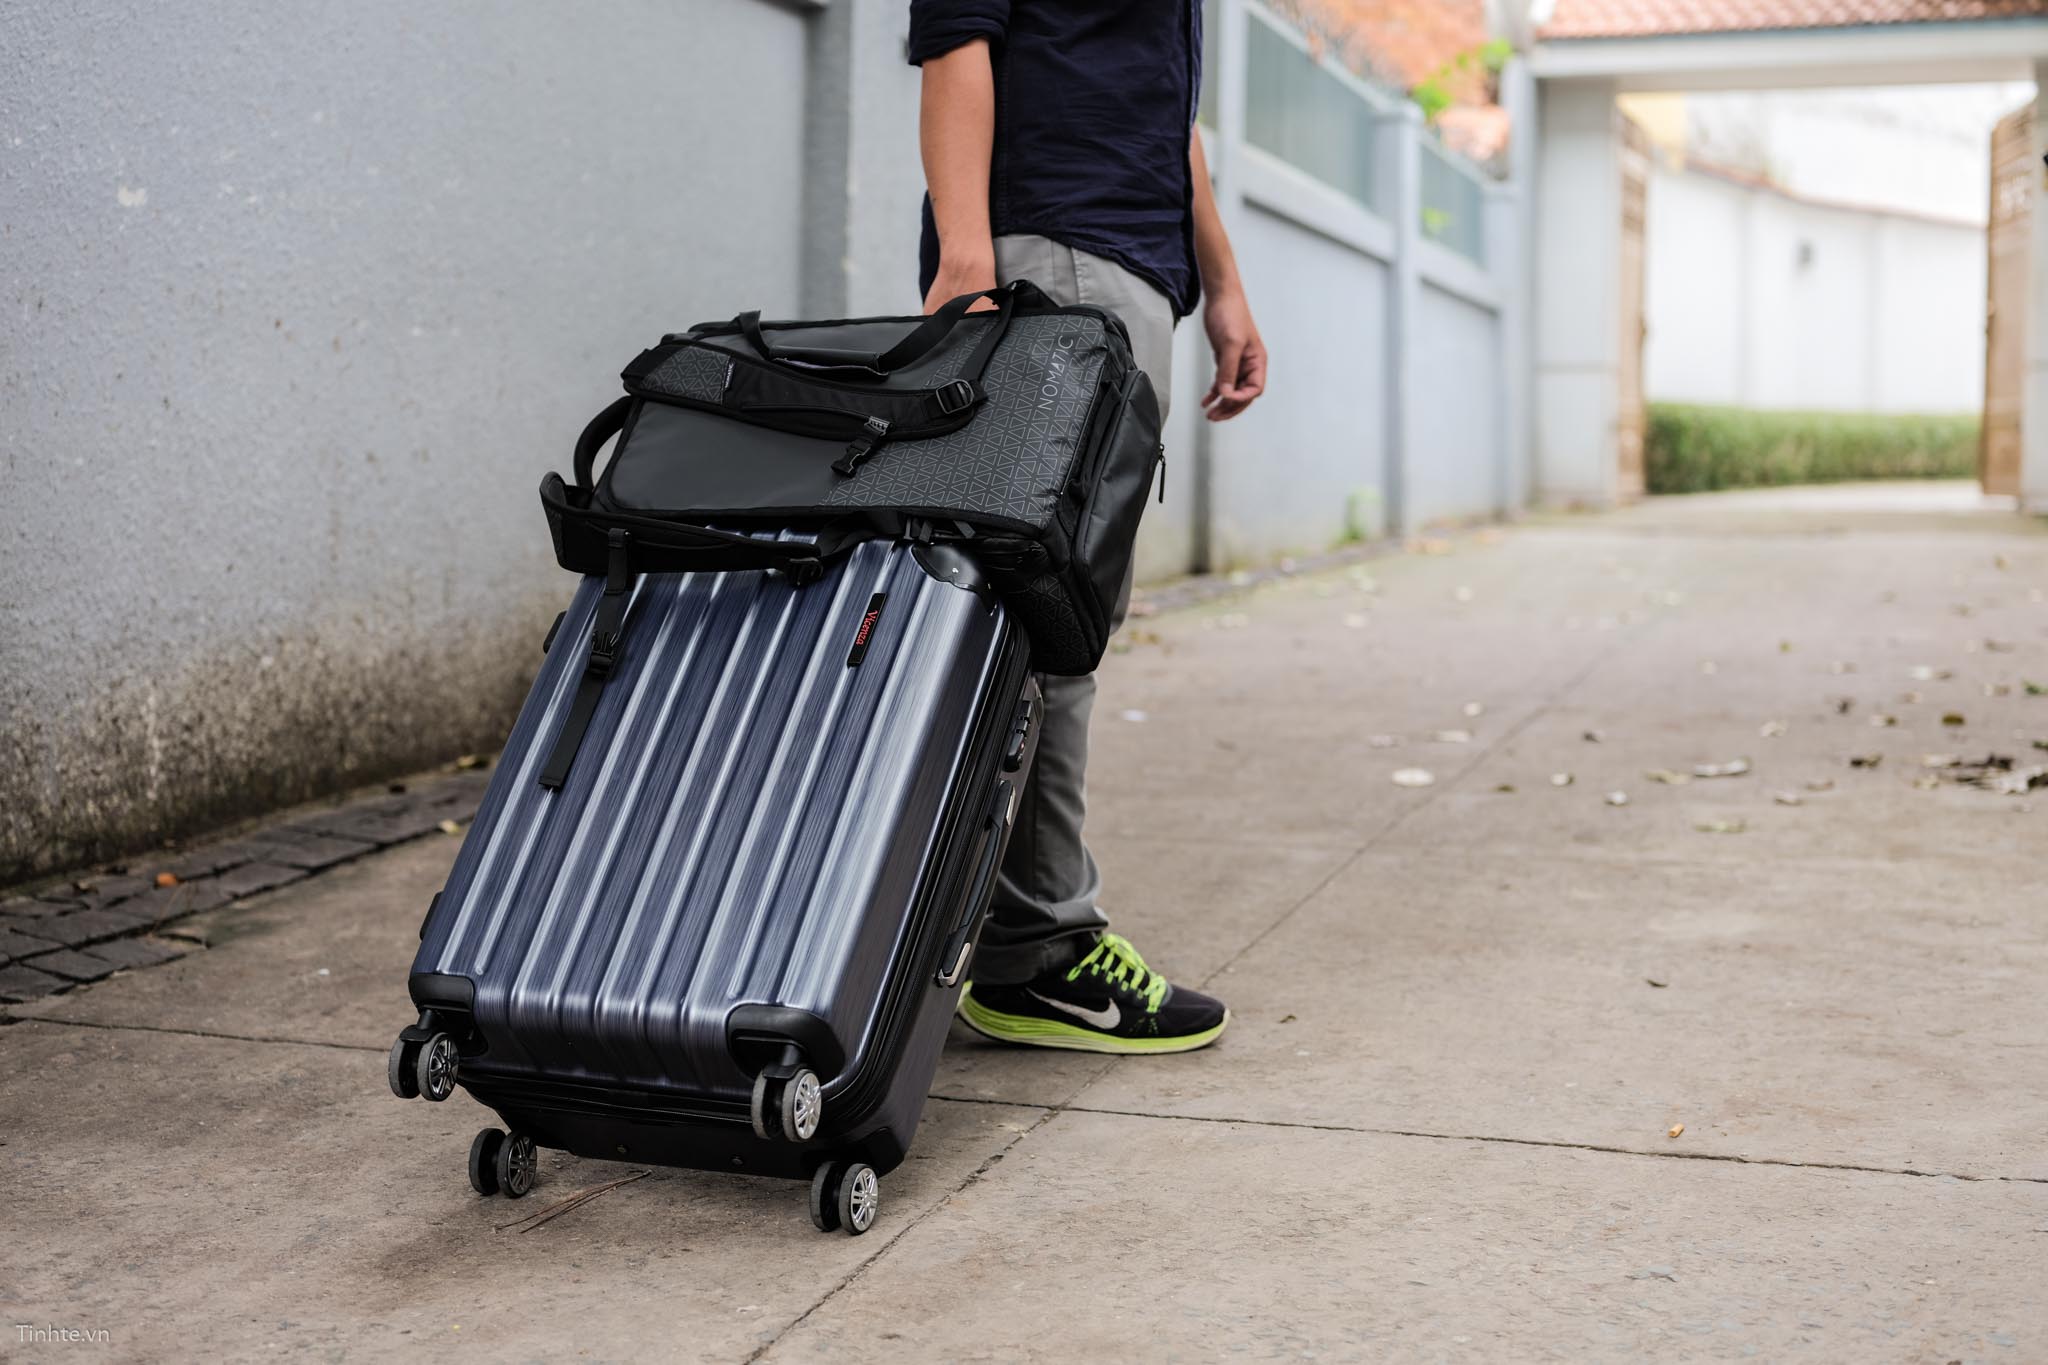 Sự lựa chọn hoàn hảo cho những chuyến du lịch dài ngày, vali chống móc giúp bảo vệ đồ dùng trong vali của bạn luôn được an toàn và nguyên vẹn.